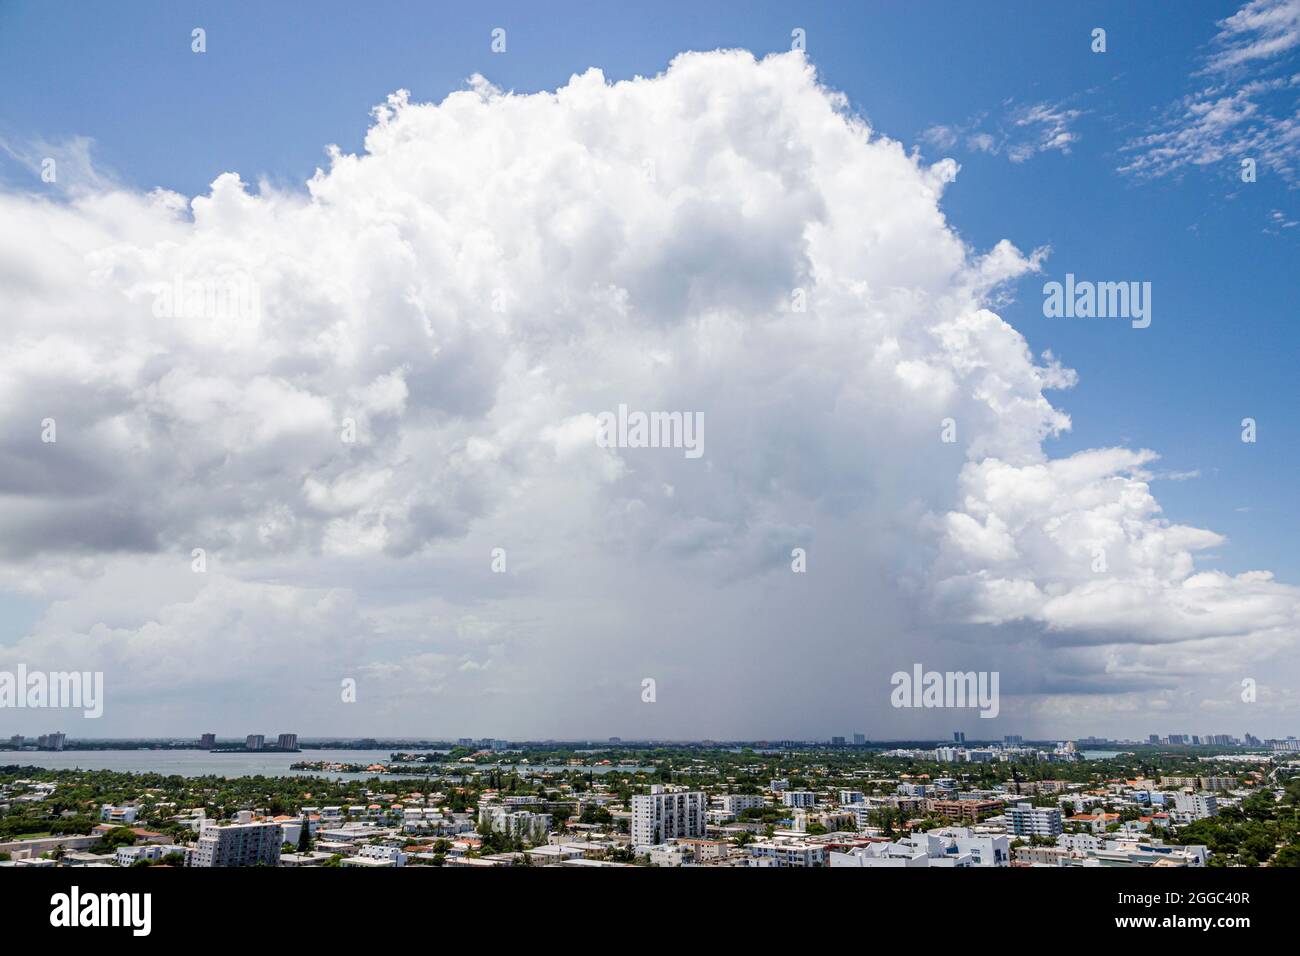 Miami Beach Florida North Beach Luftaufnahme von oben Blick Sommerwetter regen Wolken Regenwolken Regenzeit Stockfoto